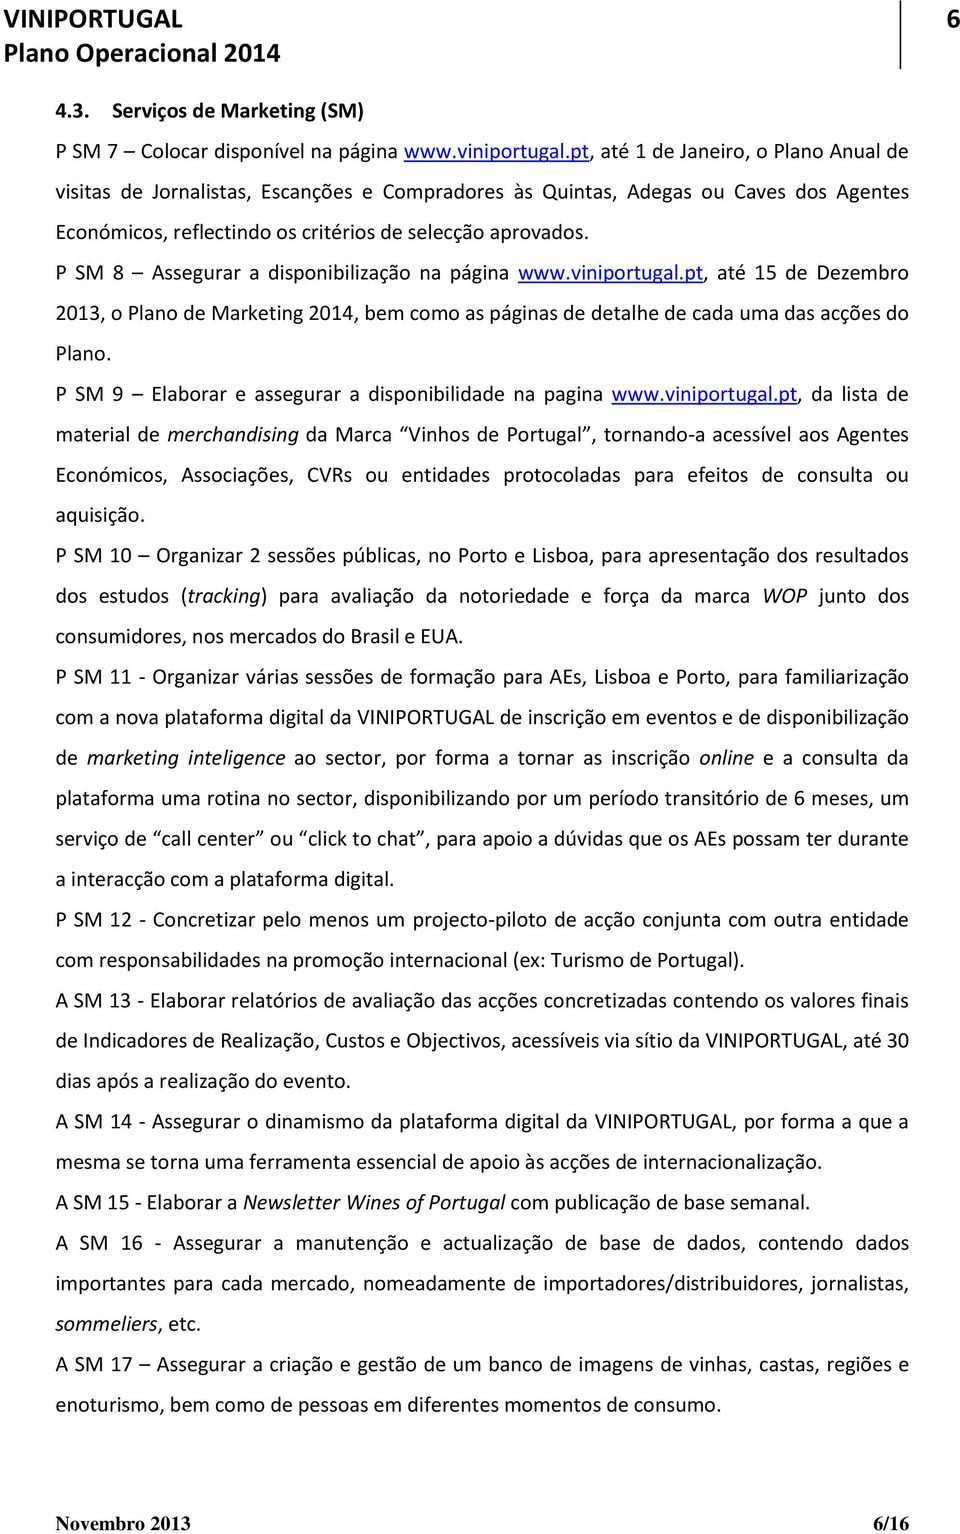 P SM 8 Assegurar a disponibilização na página www.viniportugal.pt, até 15 de Dezembro 2013, o Plano de Marketing 2014, bem como as páginas de detalhe de cada uma das acções do Plano.